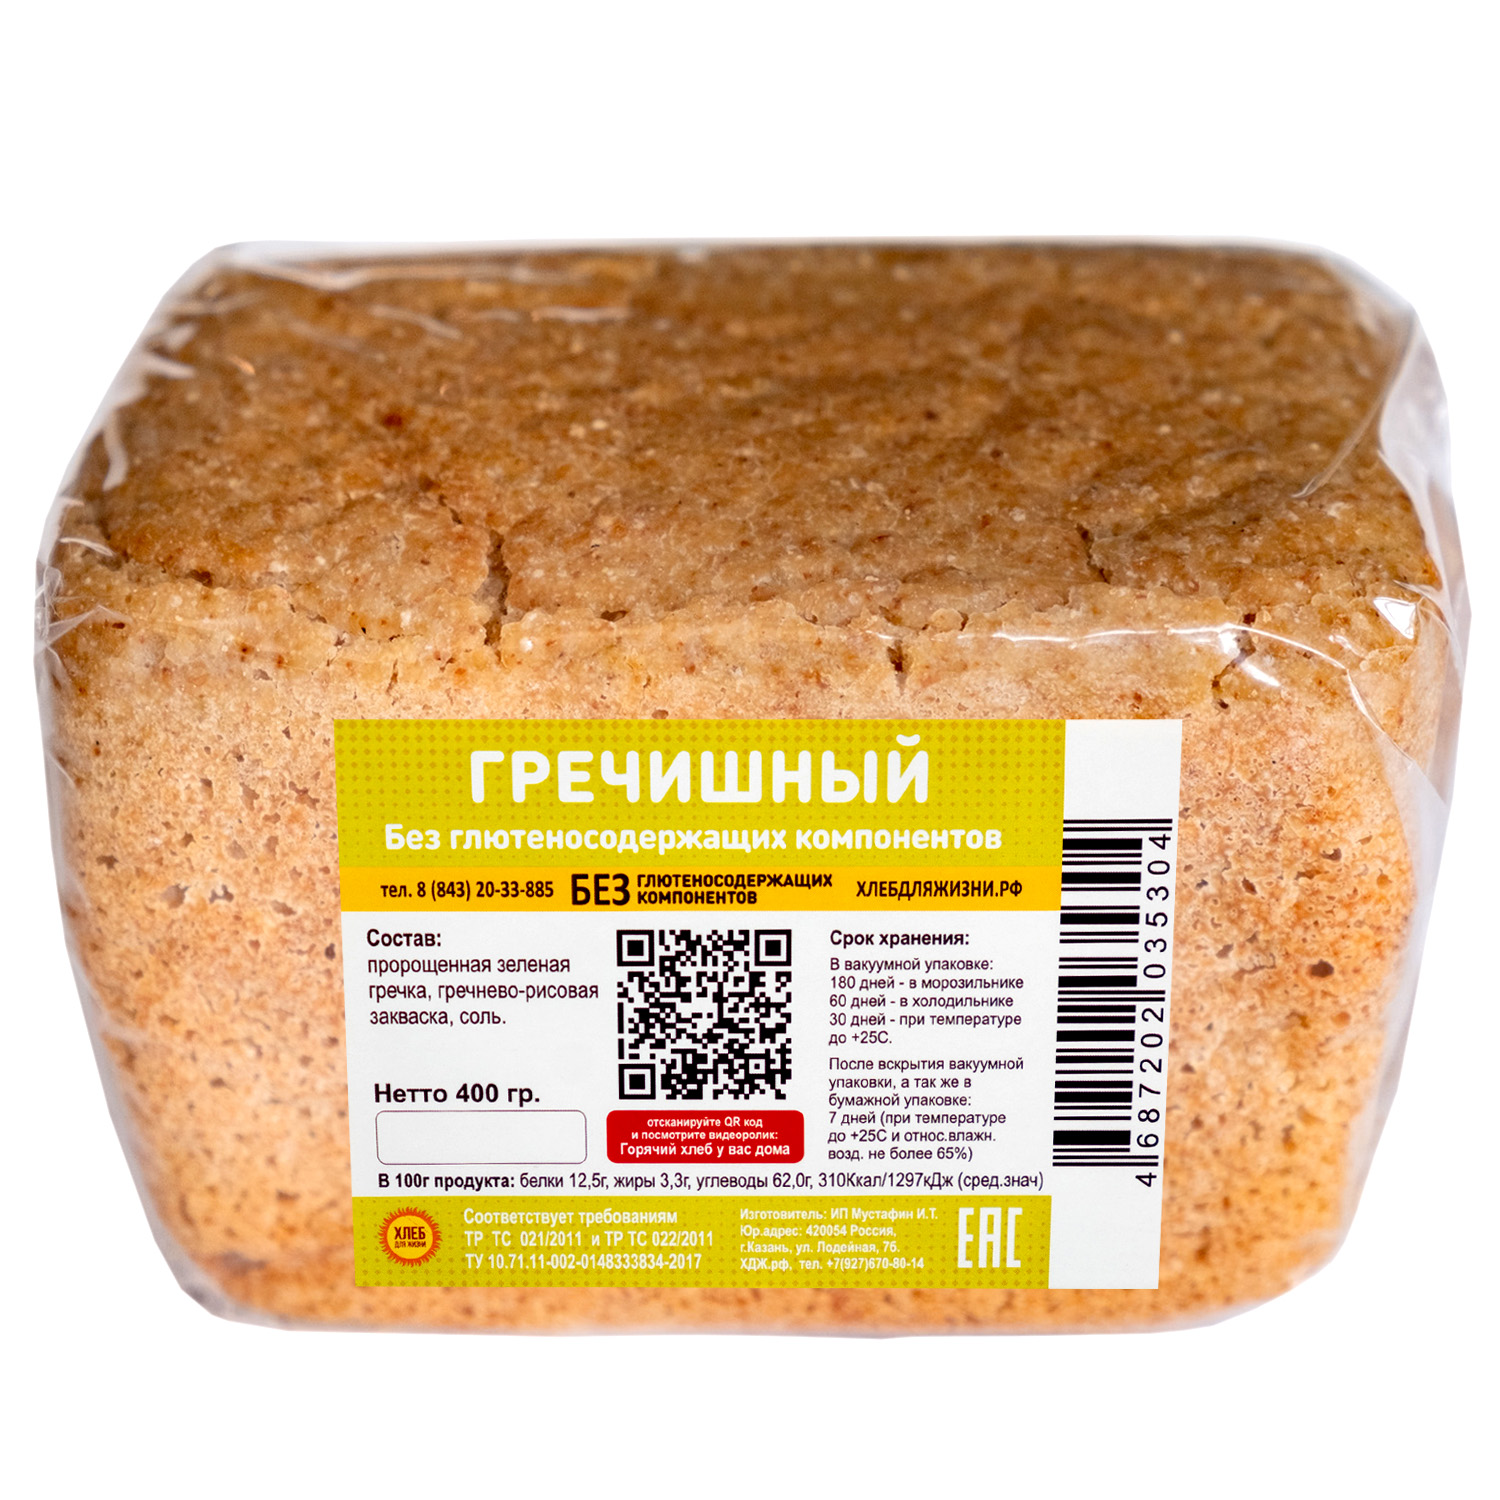 Хлеб для Жизни гречишный безглютеновый, бездрожжевой, на закваске, 400 г